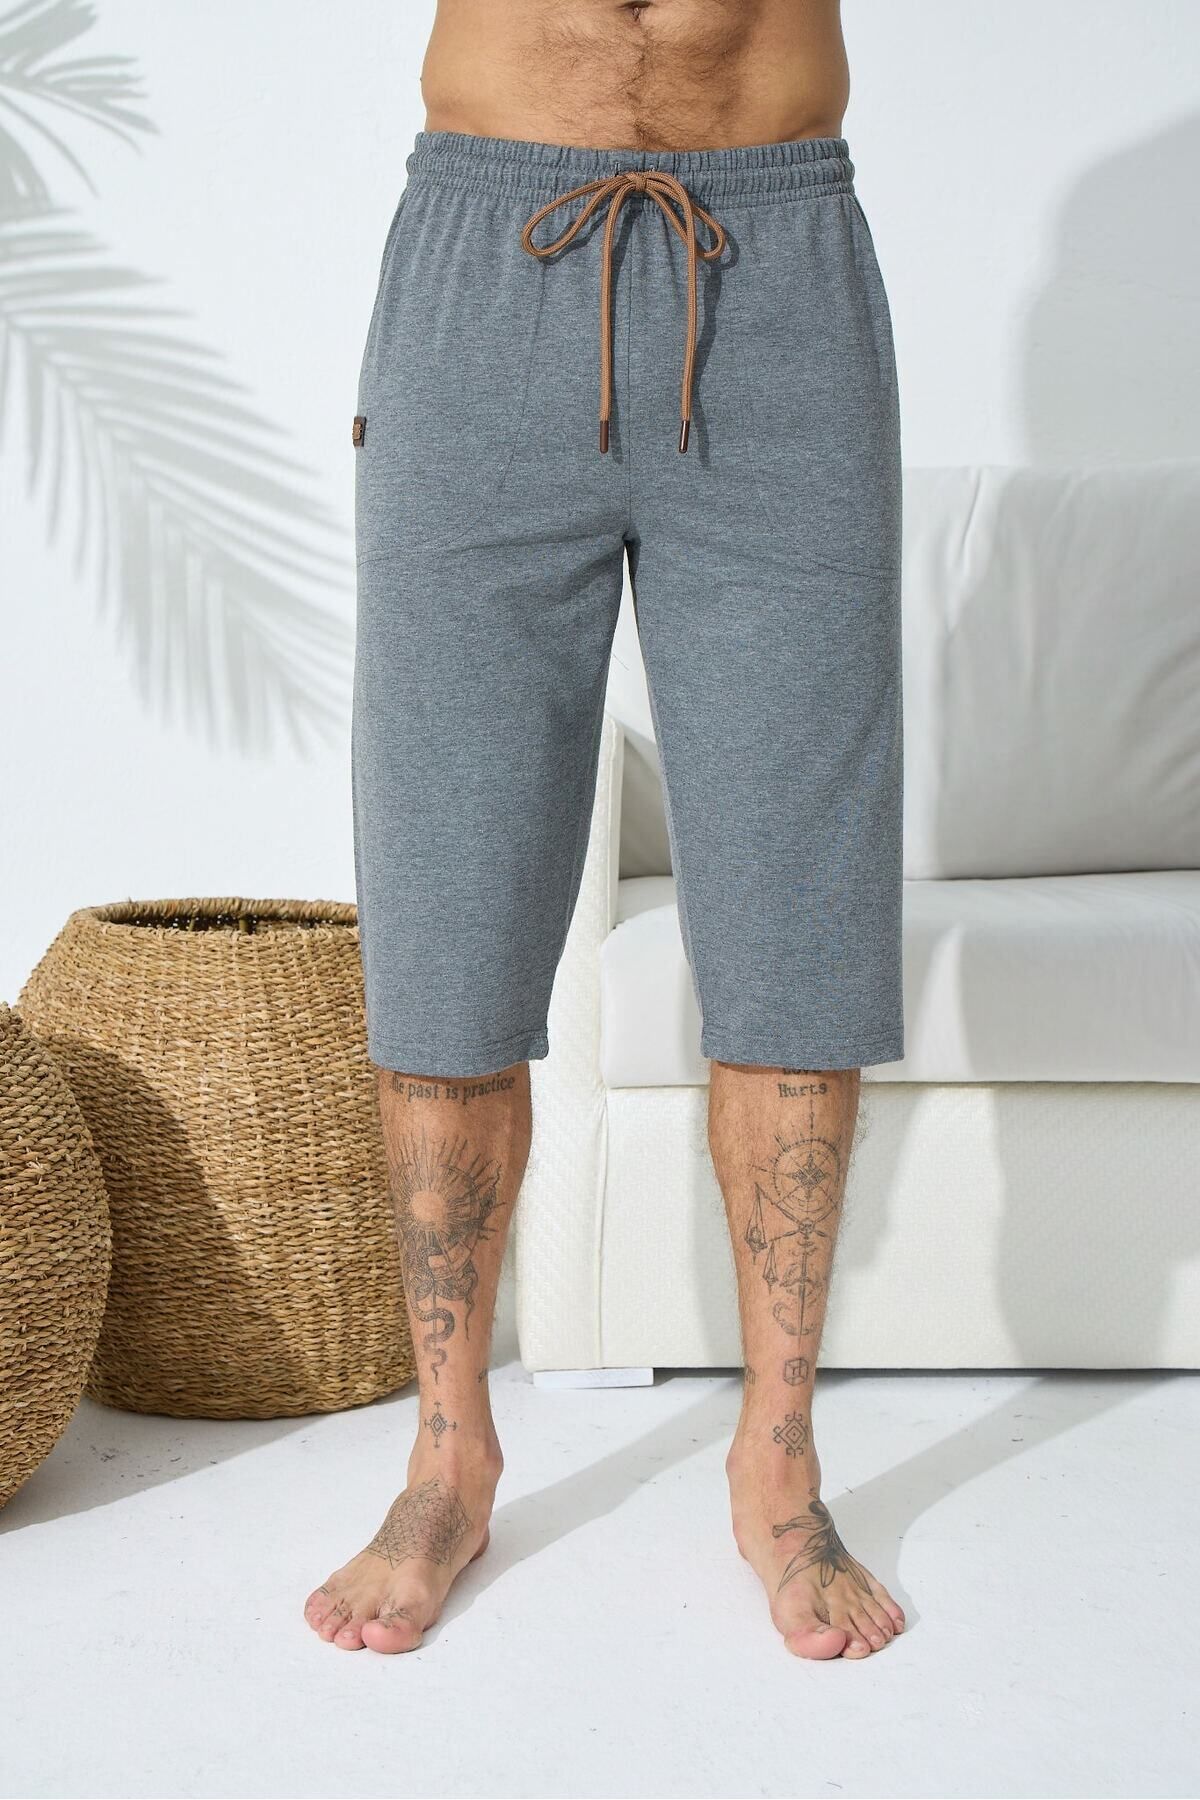 KLY Erkek Antrasit Ince Tek Alt Çok Rahat Pamuk Kapri Pijama